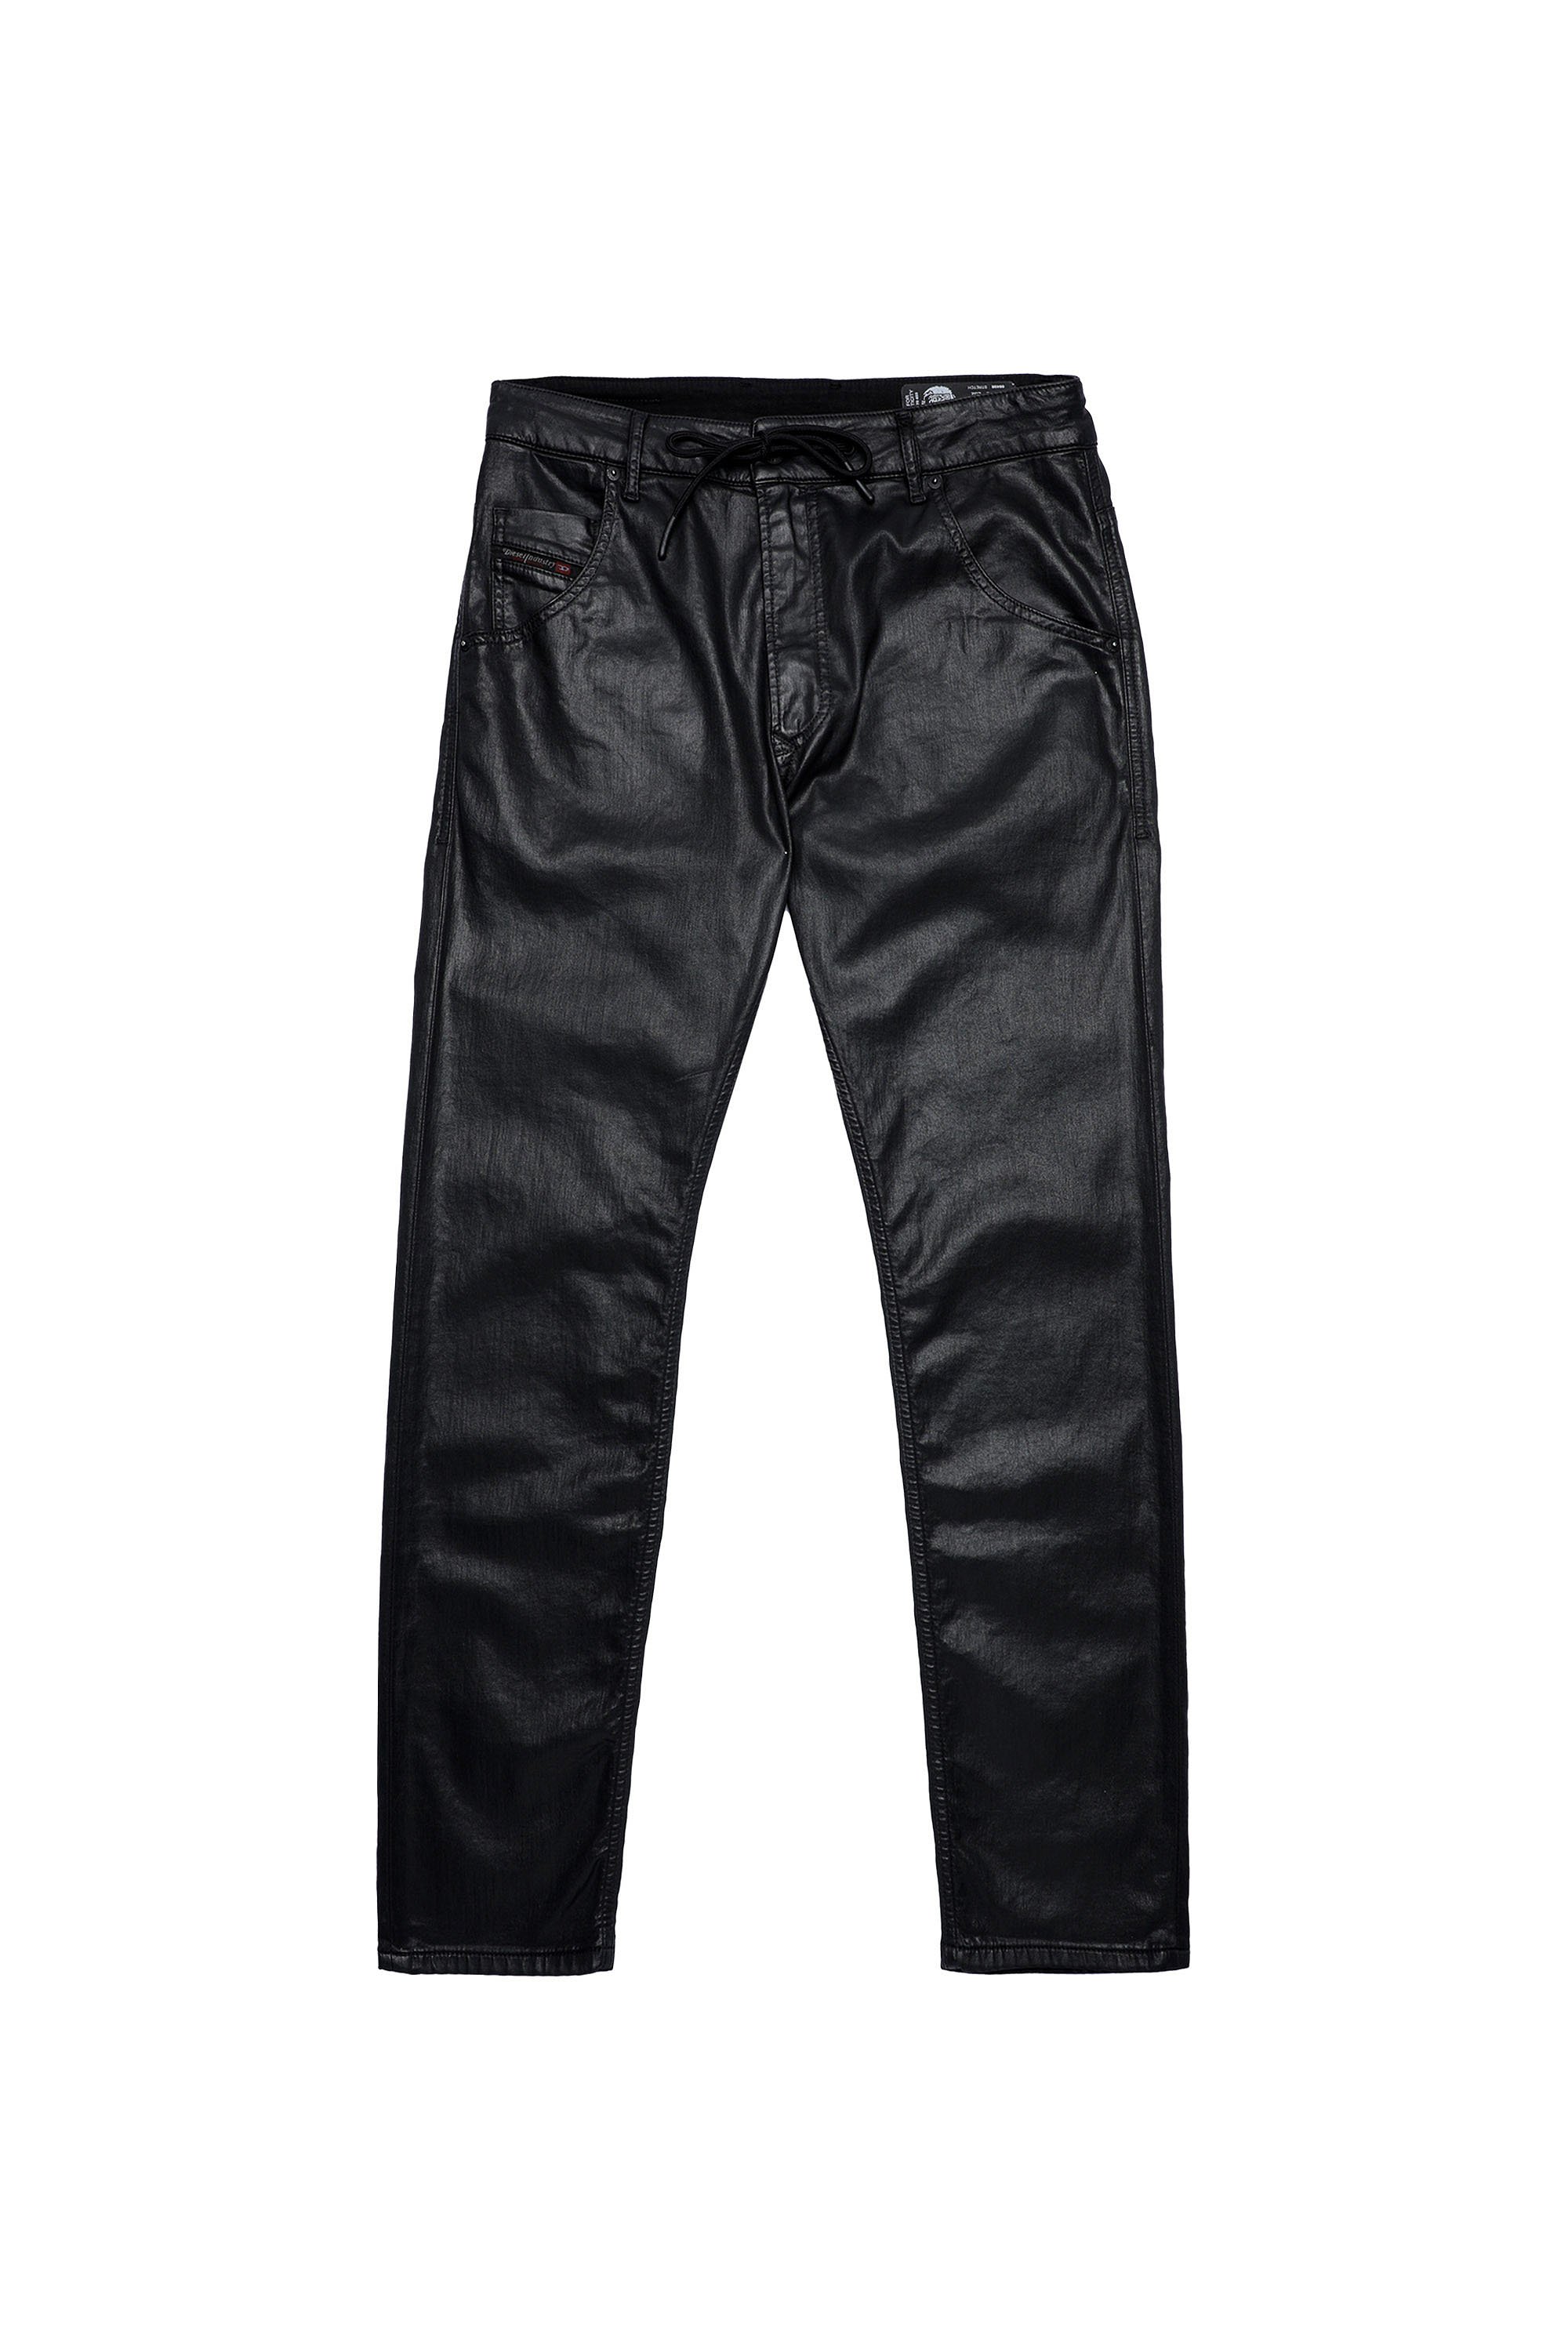 Diesel - Krooley JoggJeans® 0849R Tapered, Black/Dark Grey - Image 6